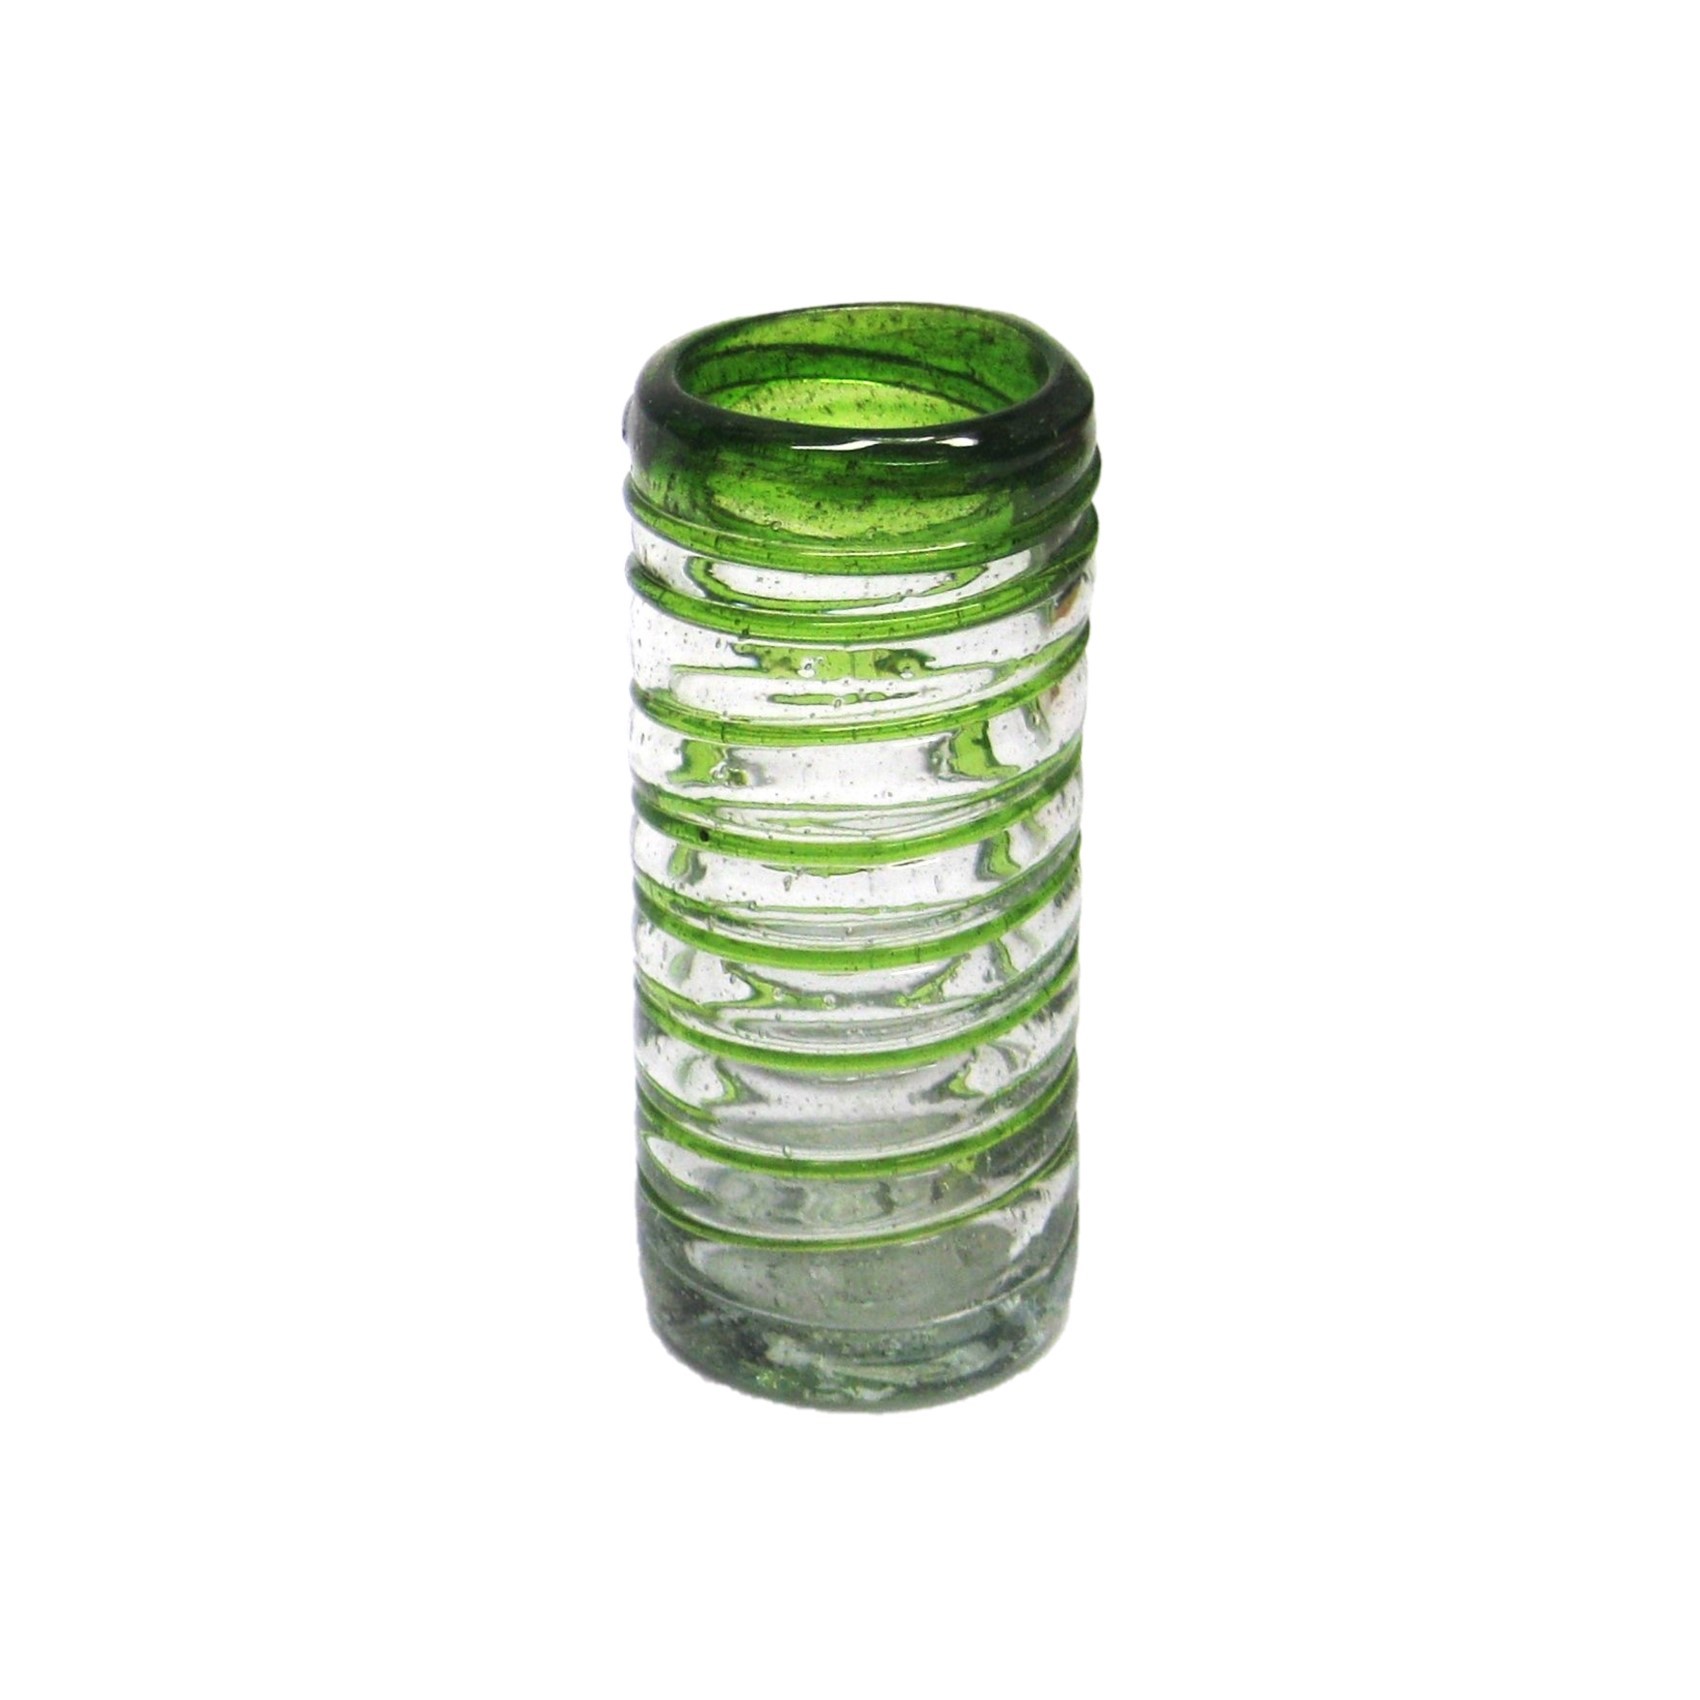 'caballitos' con espiral verde esmeralda, 2 oz, Vidrio Reciclado, Libre de Plomo y Toxinas